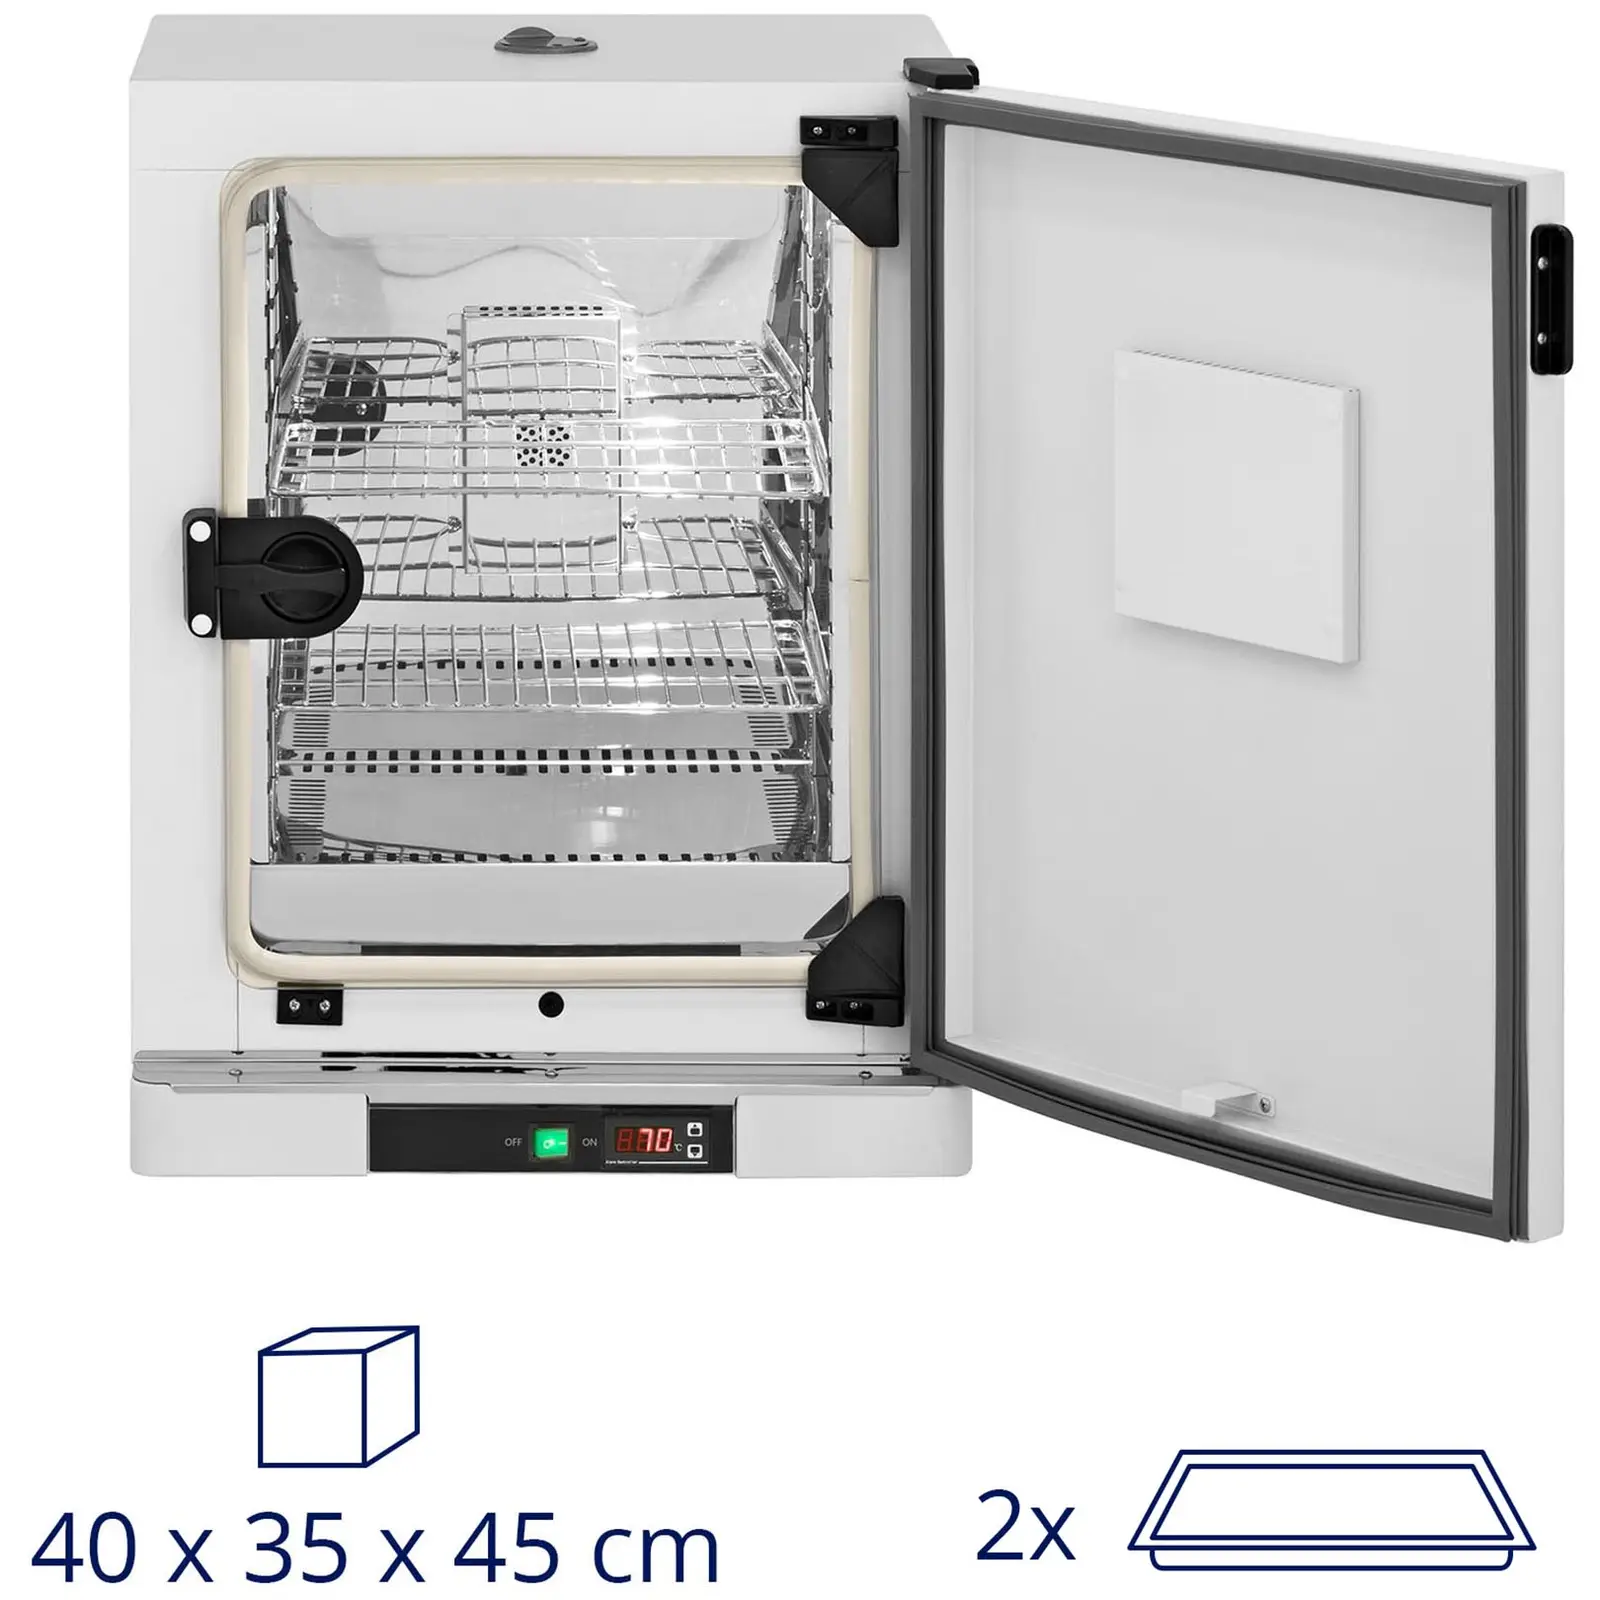 Incubadora de laboratorio - hasta 70 °C - 65 L - circulación de aire